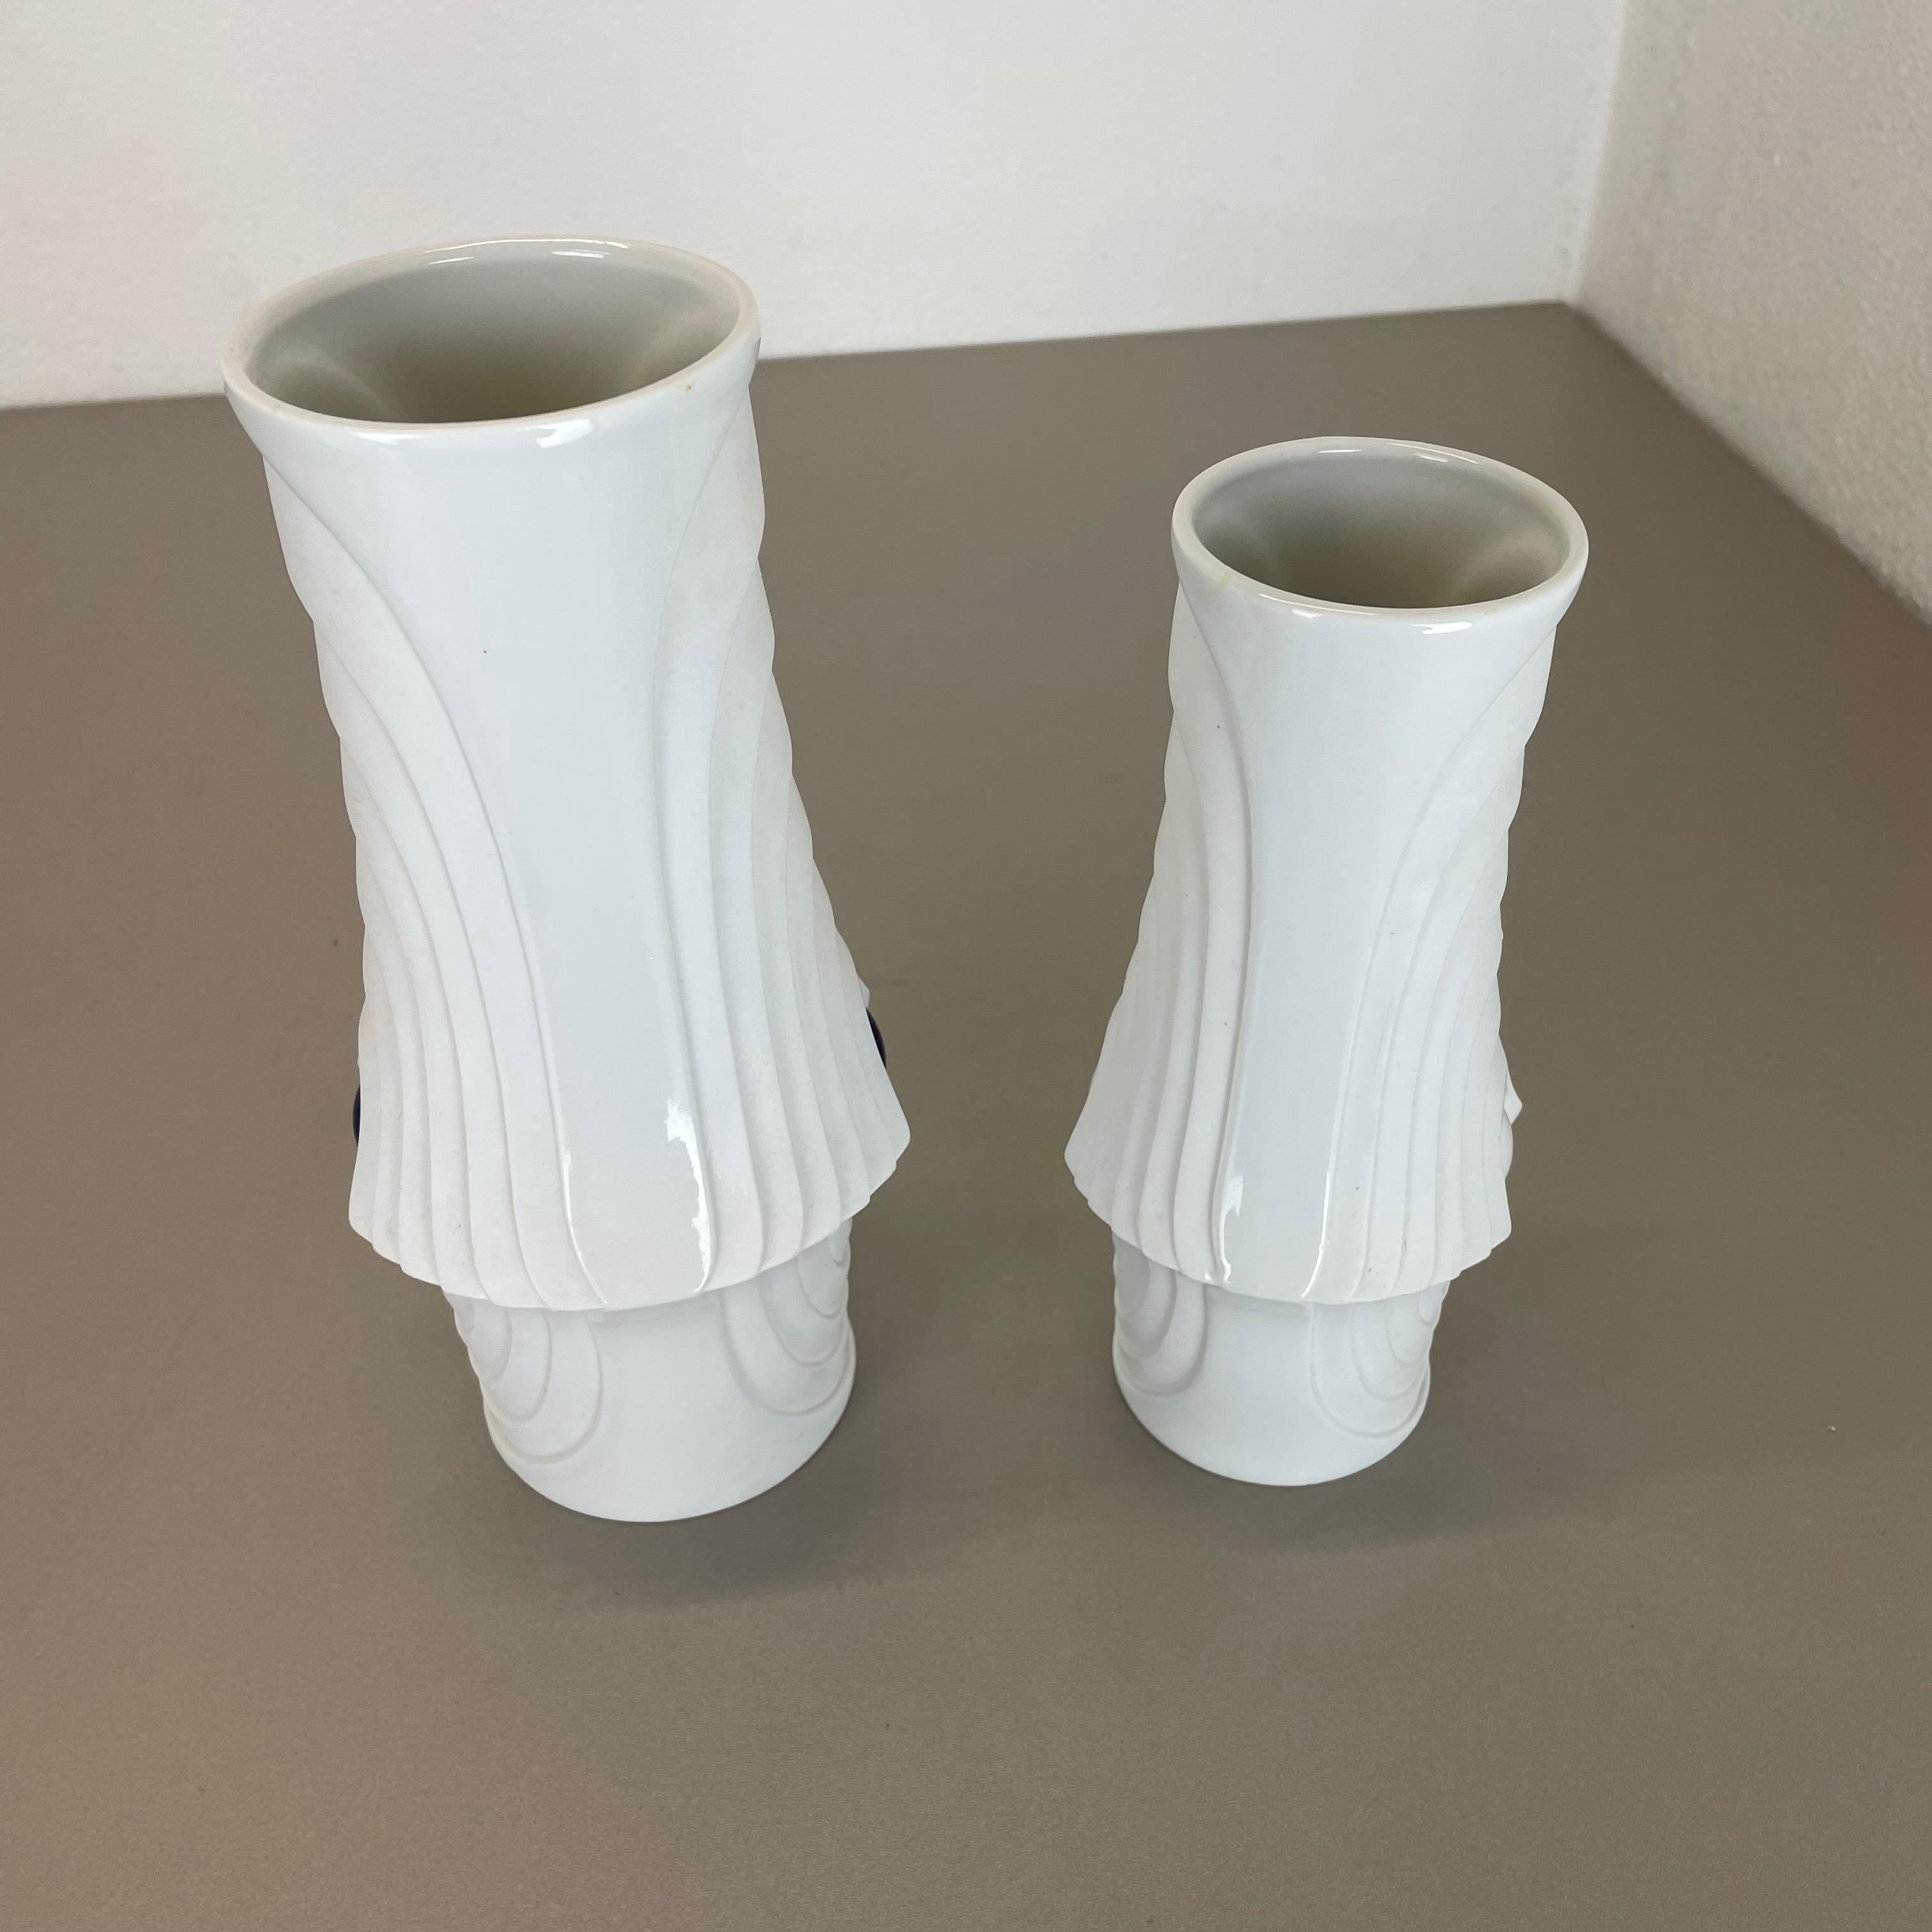 Set of 2 Original Porcelain Op Art Vase Made by Royal Bavaria KPM Germany, 1970s For Sale 7